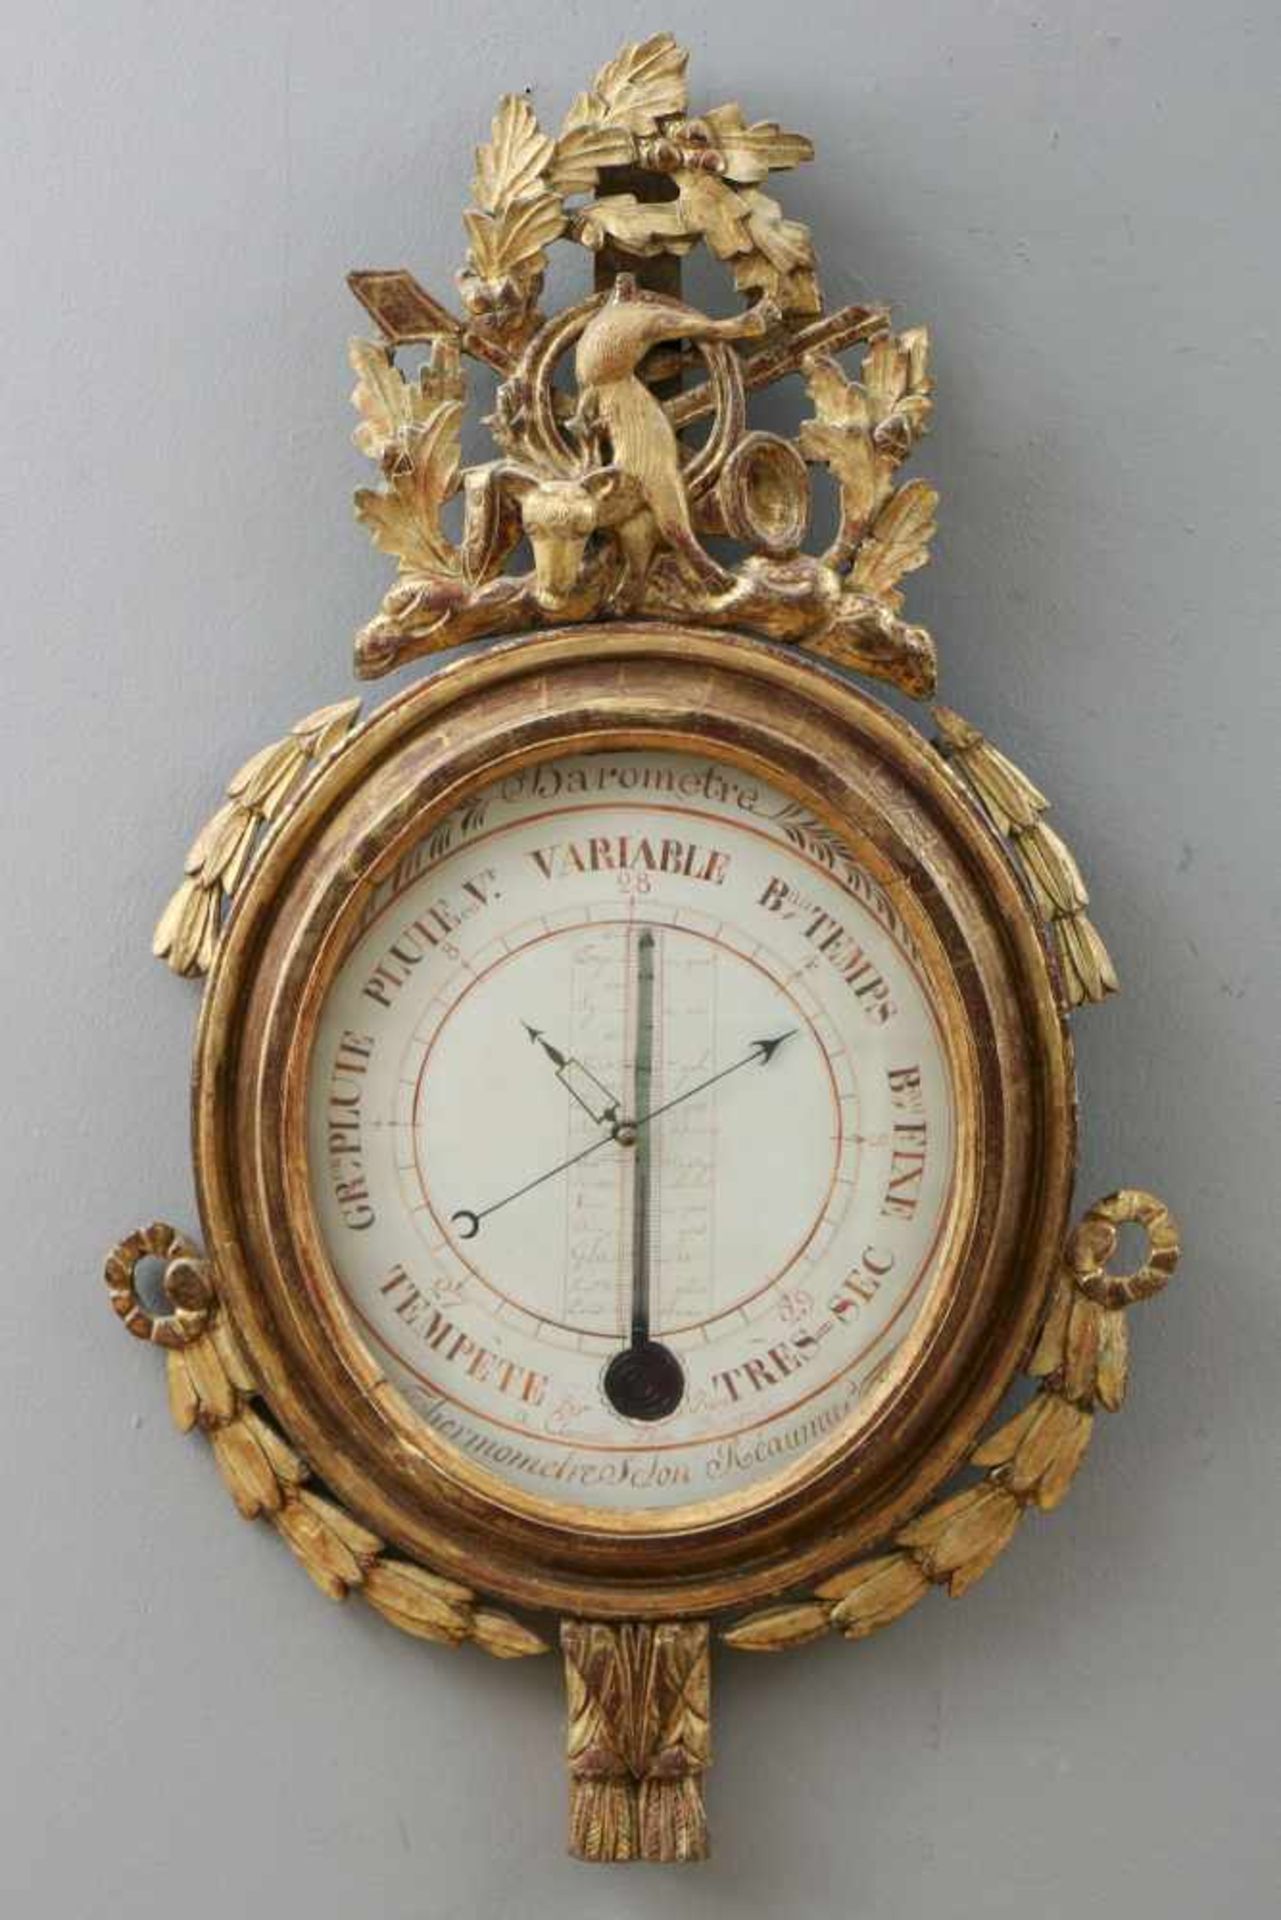 Französisches BarometerLouis XVI., um 1800, runder Holzrahmen mit Festonen-, Trompeten- und